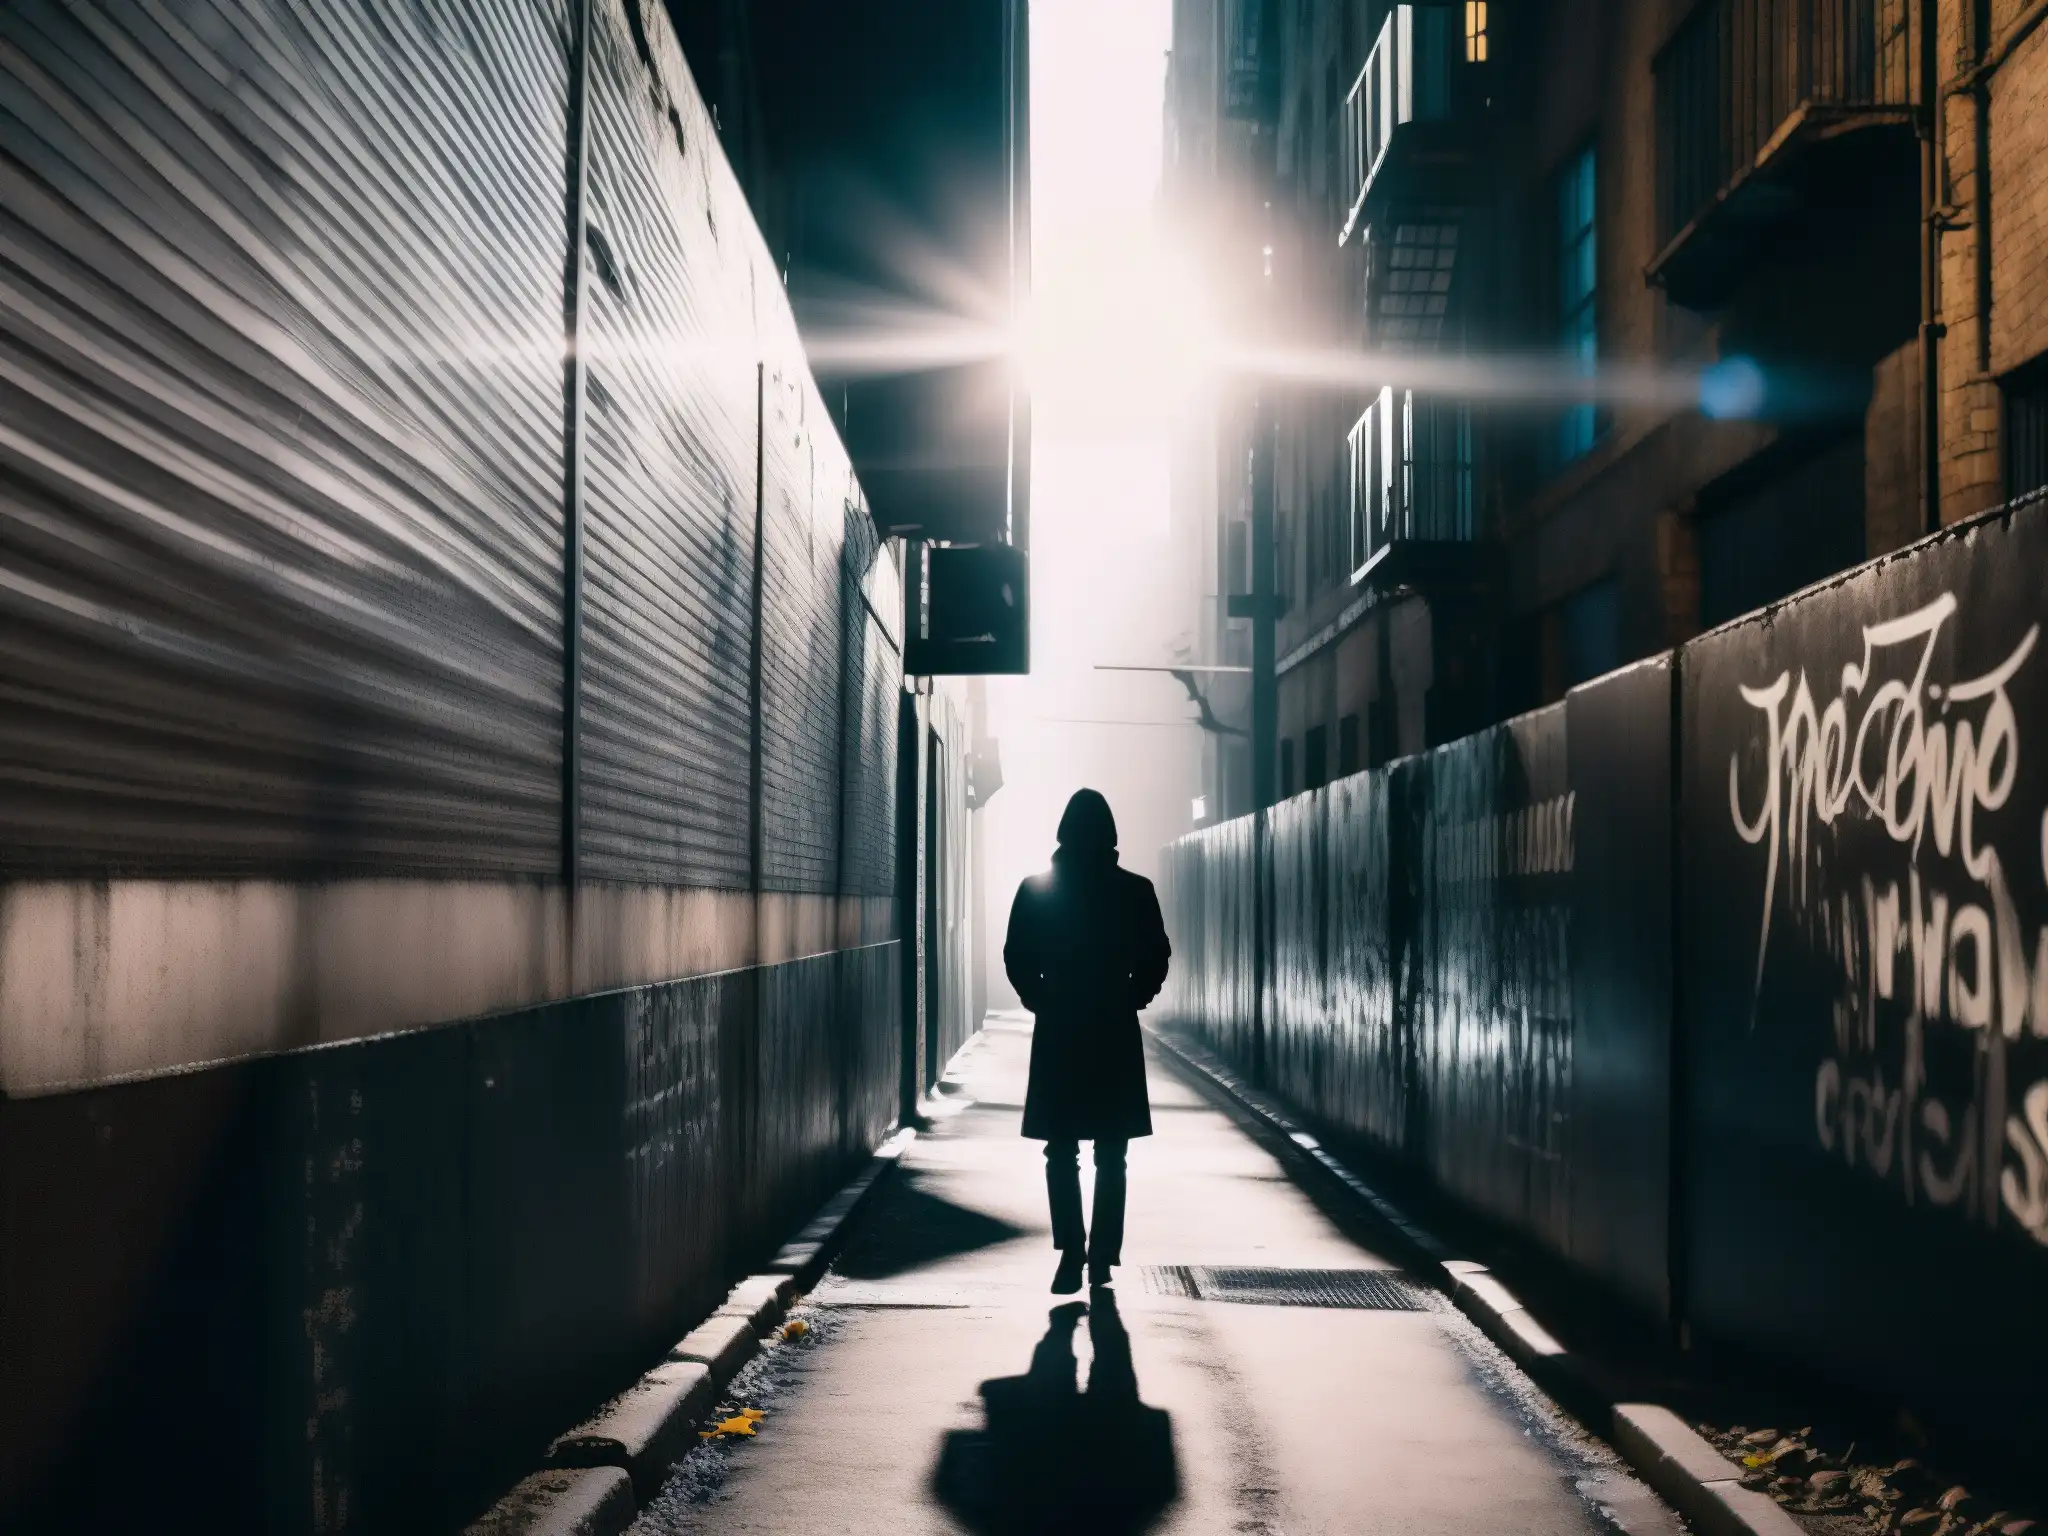 Una imagen en blanco y negro de un callejón sombrío en una ciudad bulliciosa, evocando la psicosis urbana y las leyendas contemporáneas